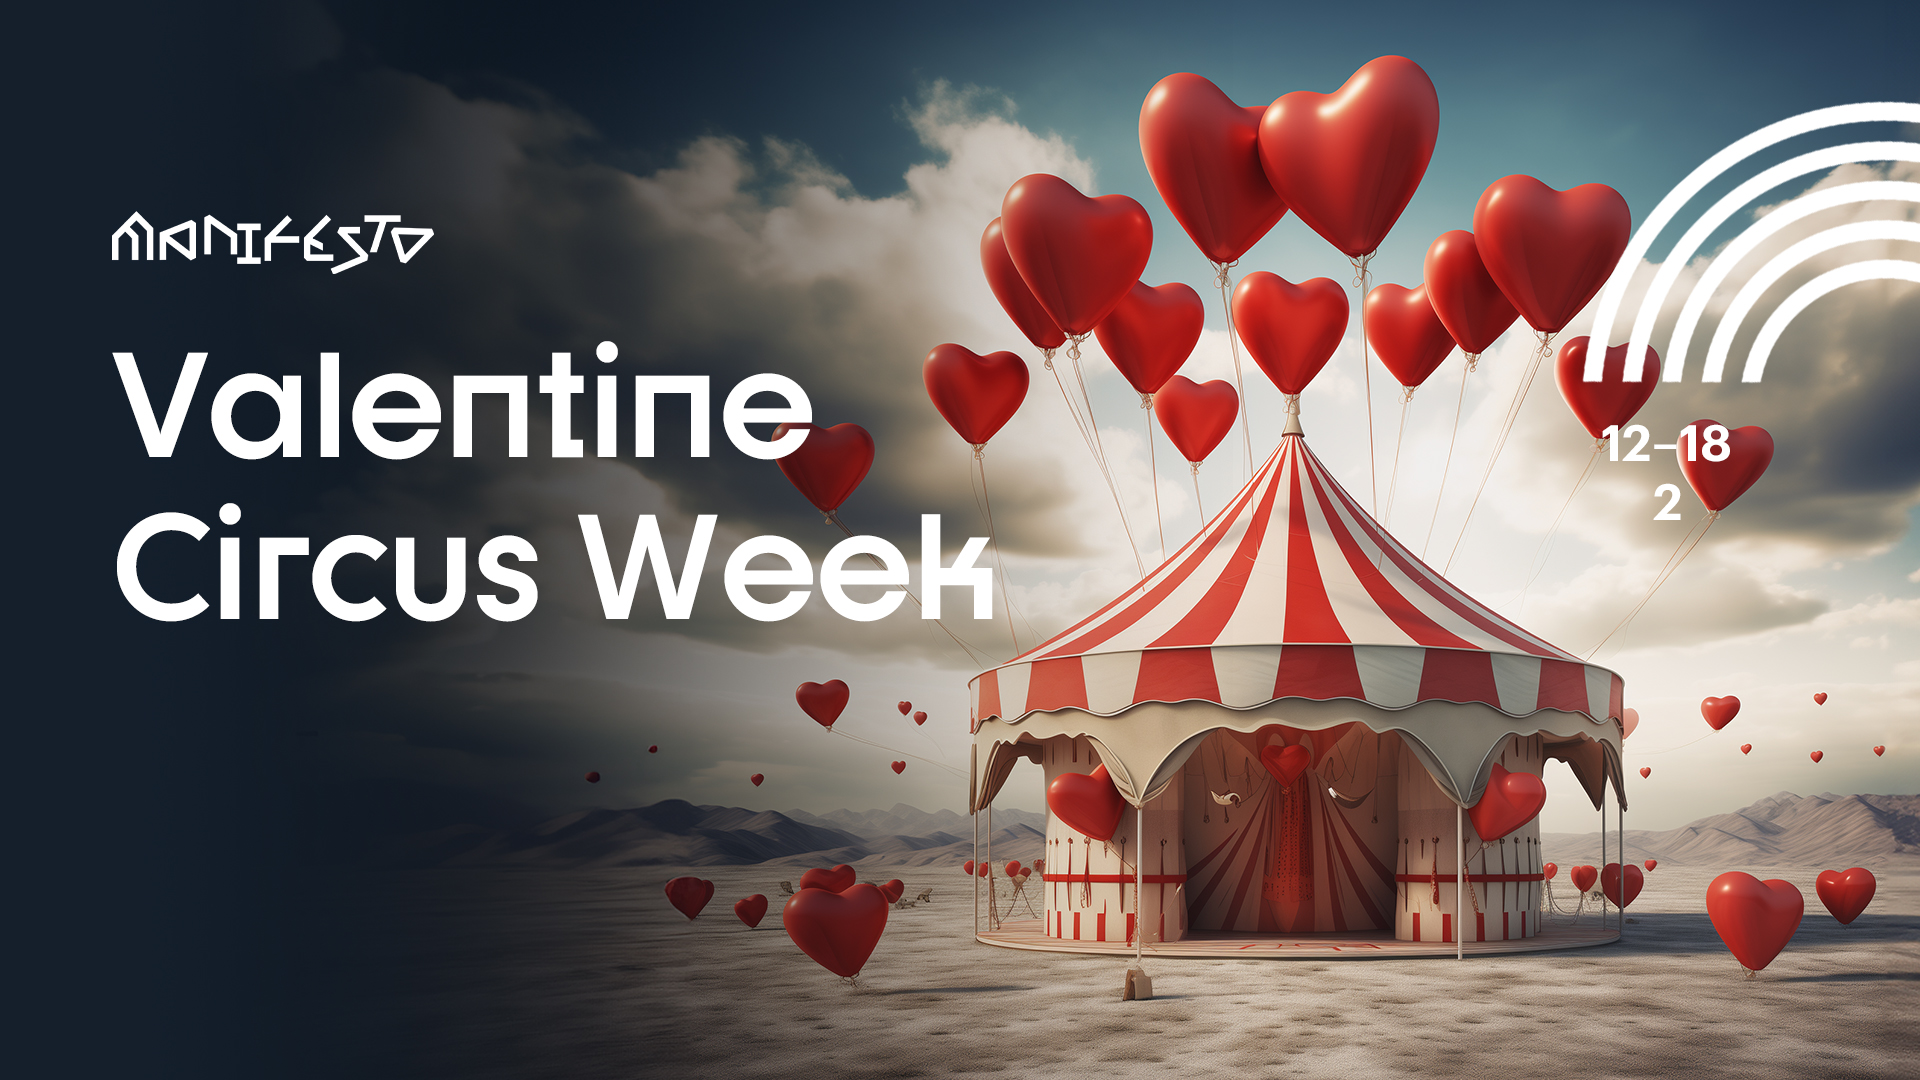 Valentine Circus Week, 15/02